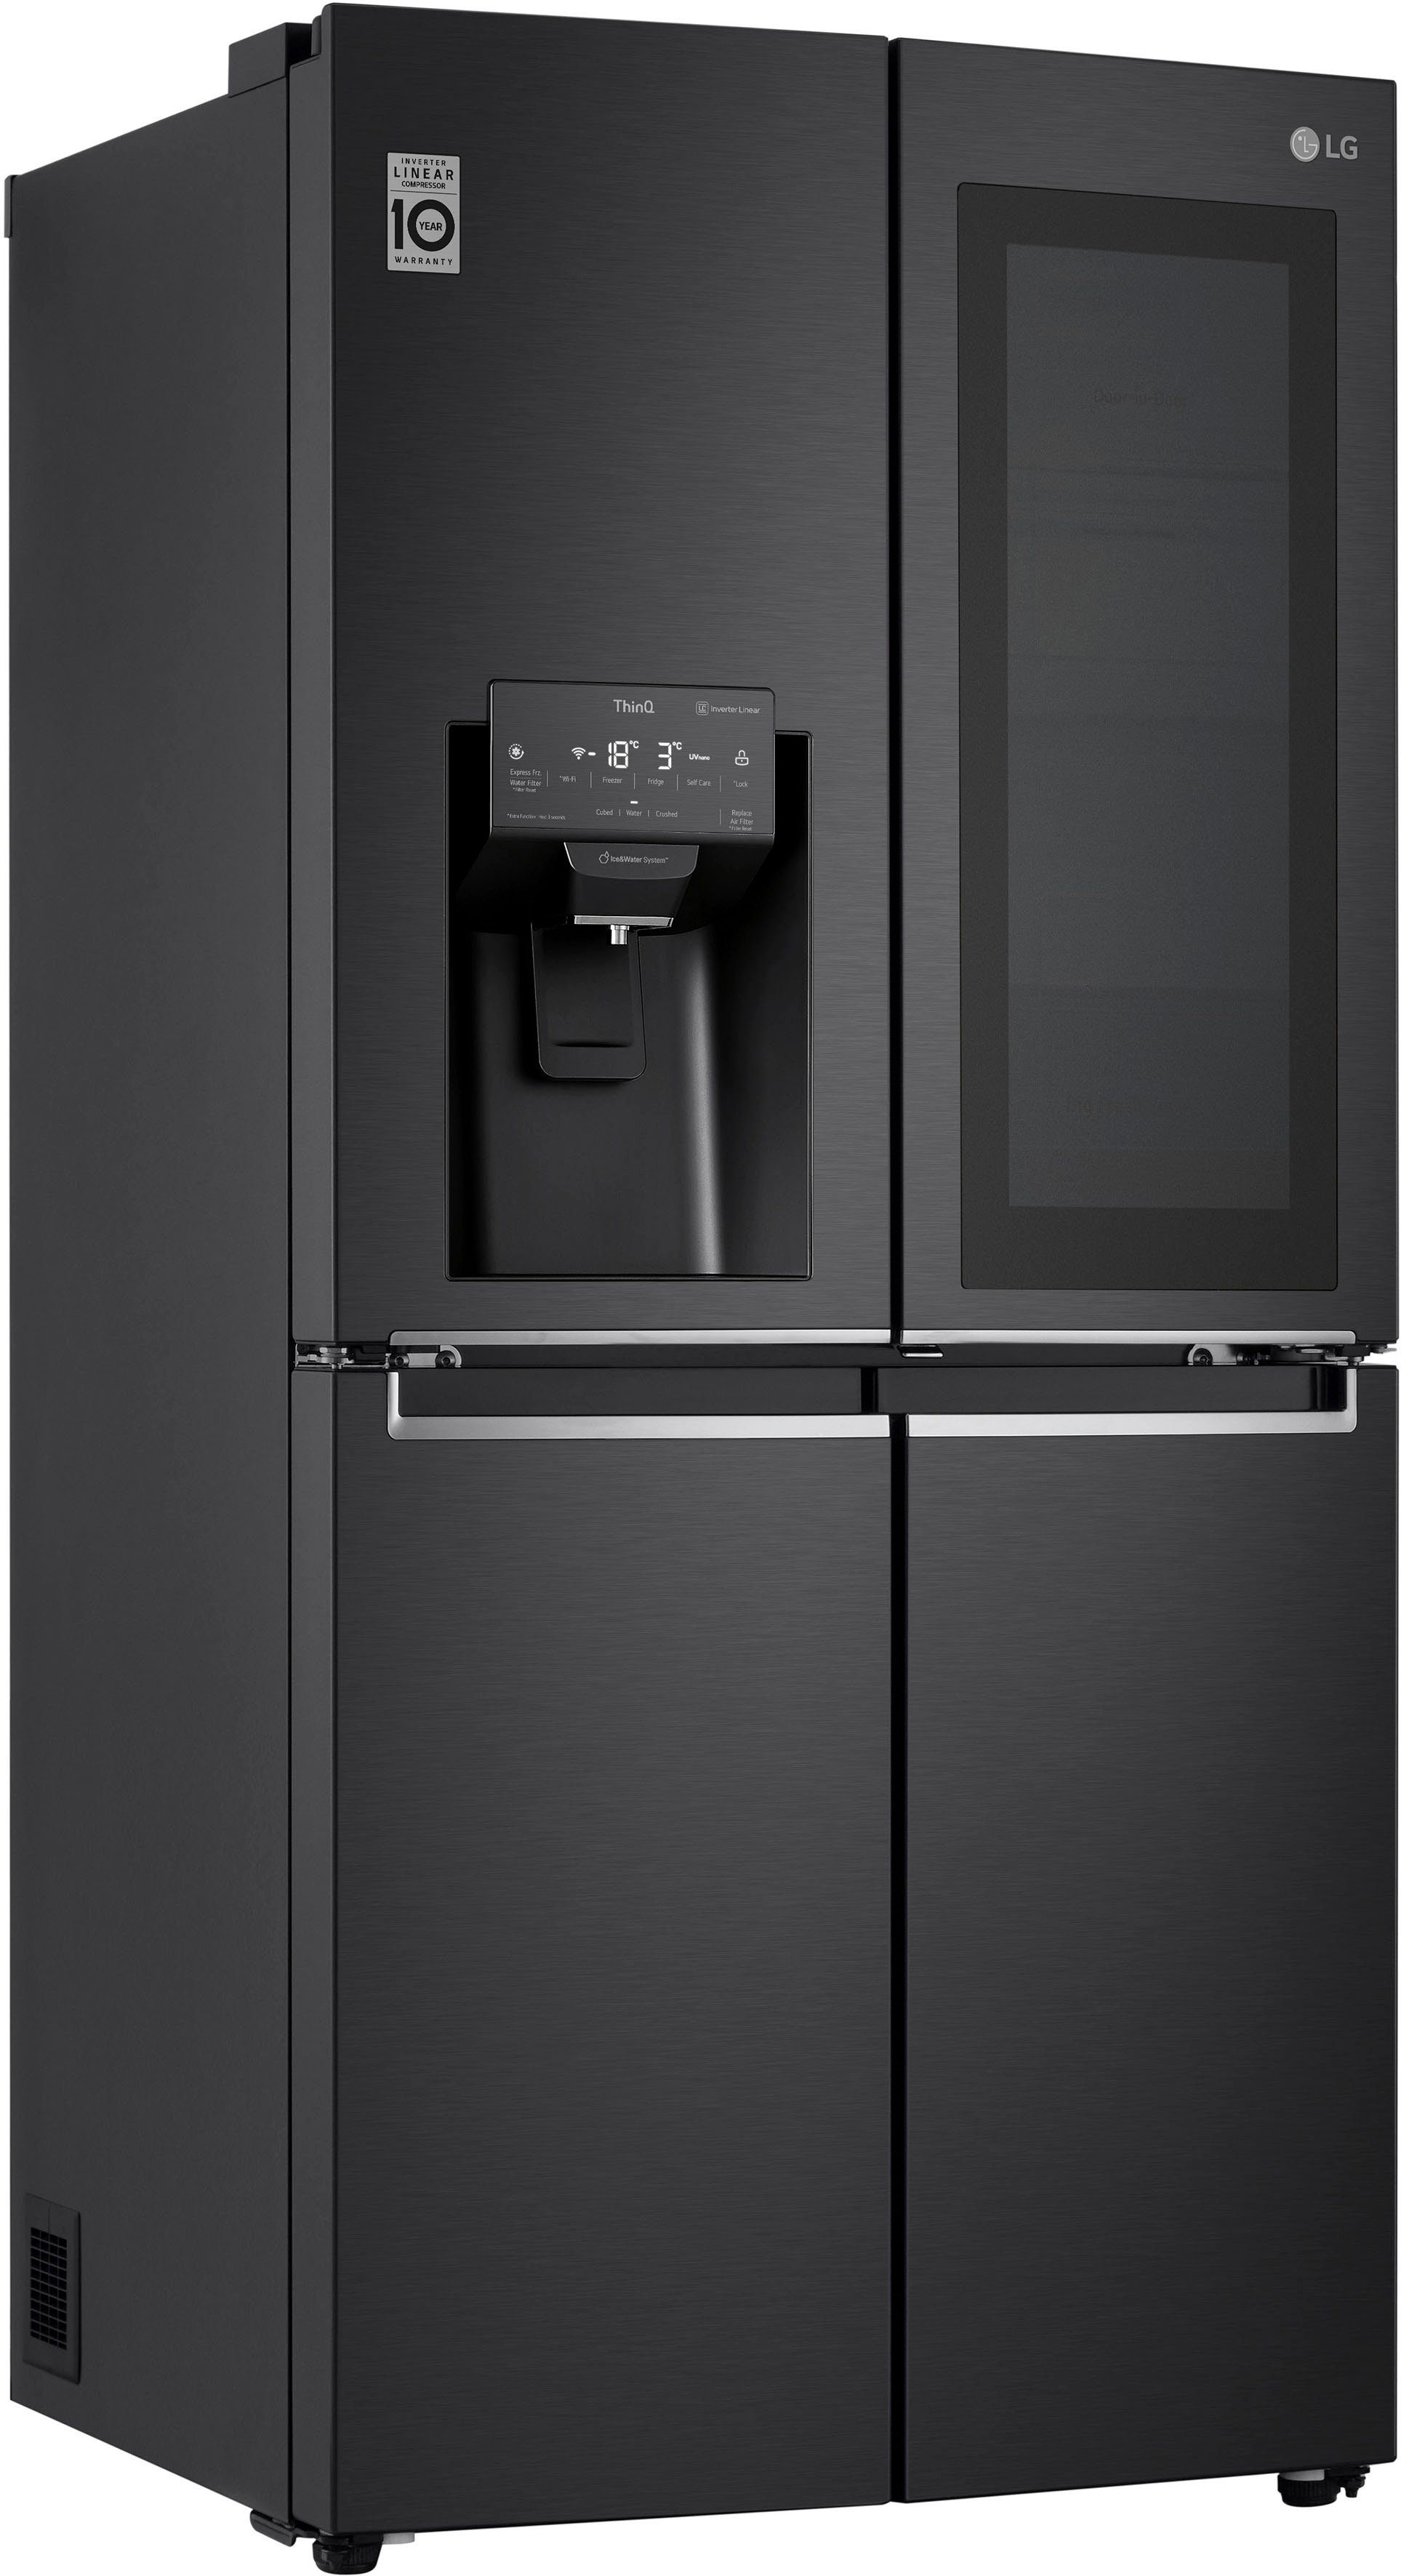 Kühlschränke online kaufen | OTTO